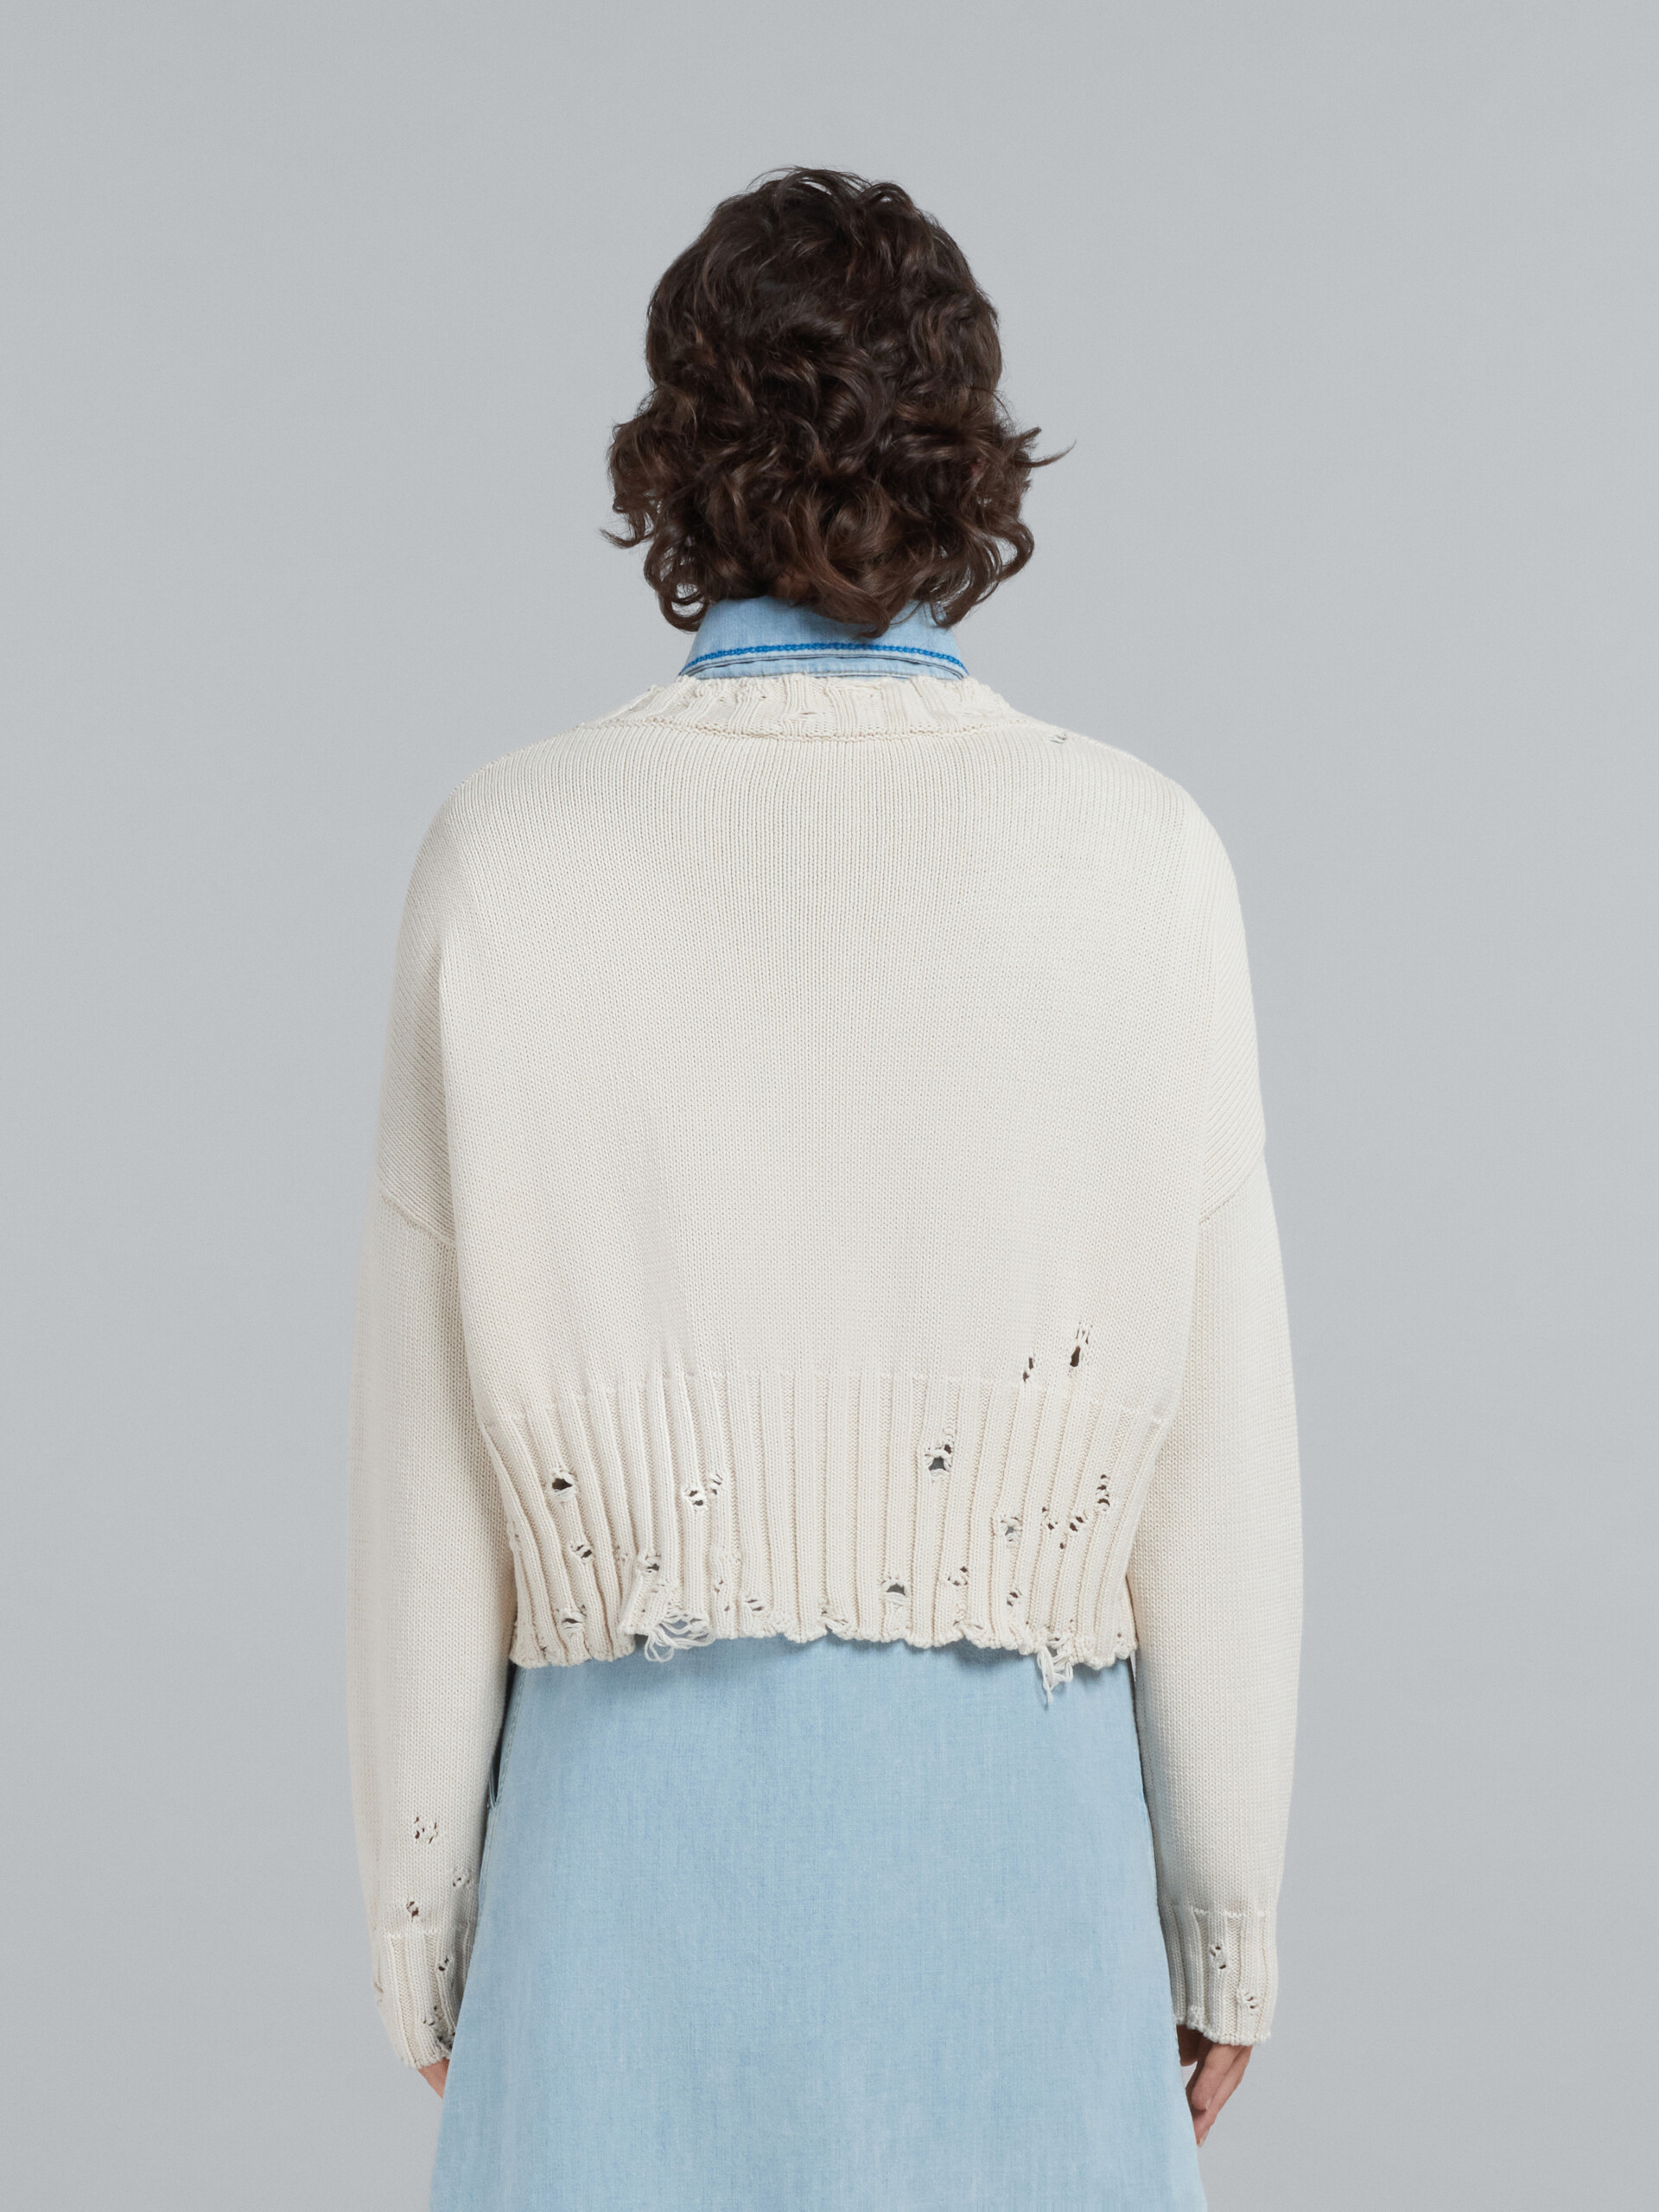 Kurzer weißer Baumwollpullover - Pullover - Image 3